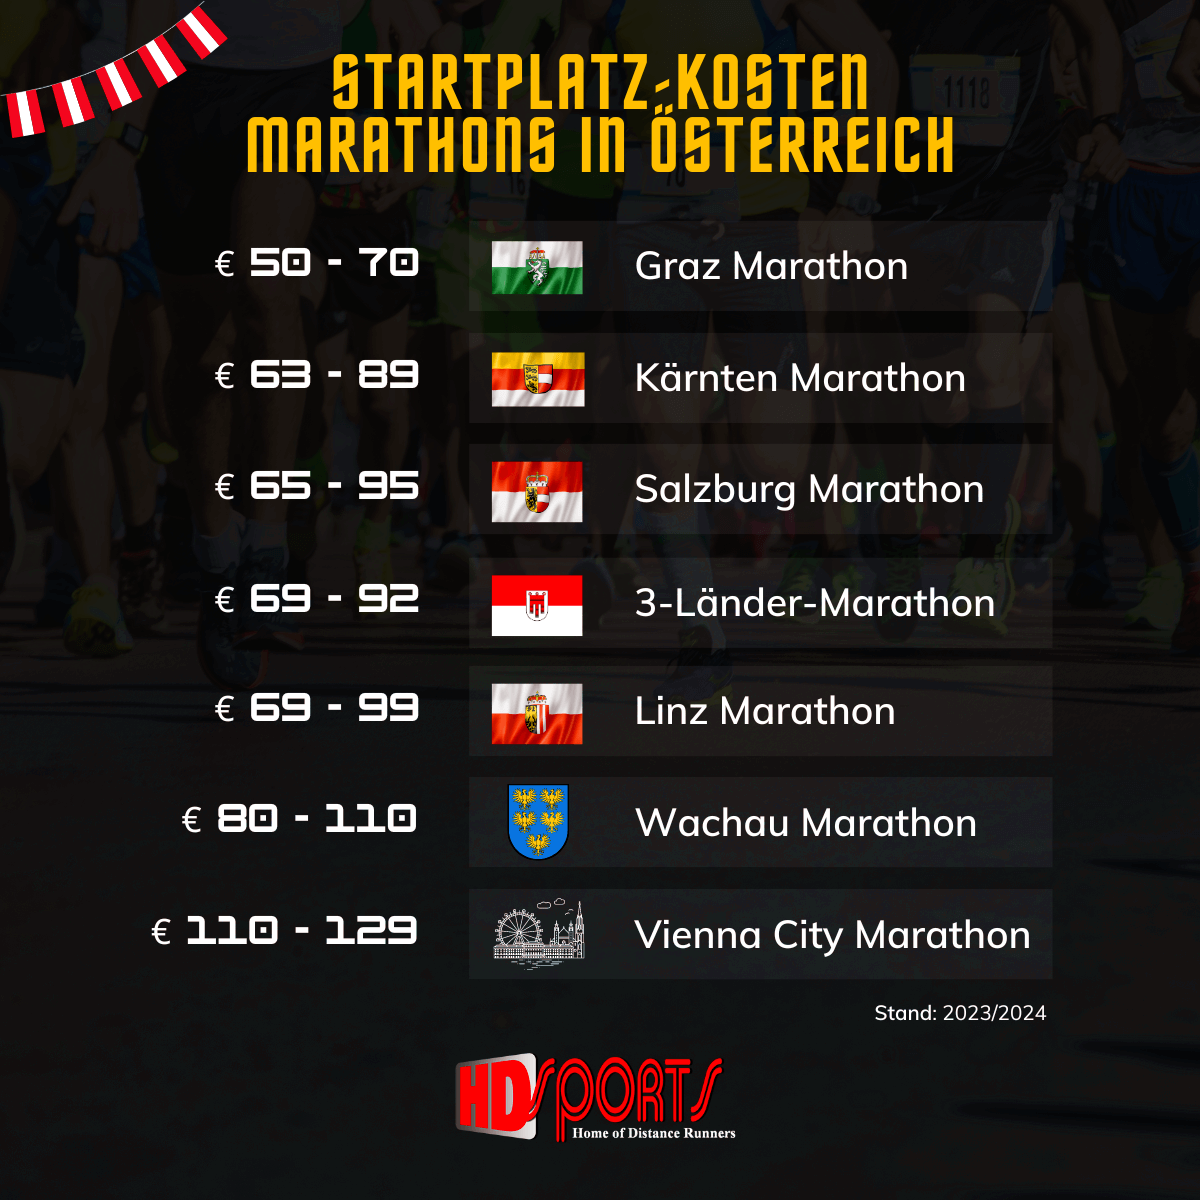 Startplatz Kosten Marathon in Österreich